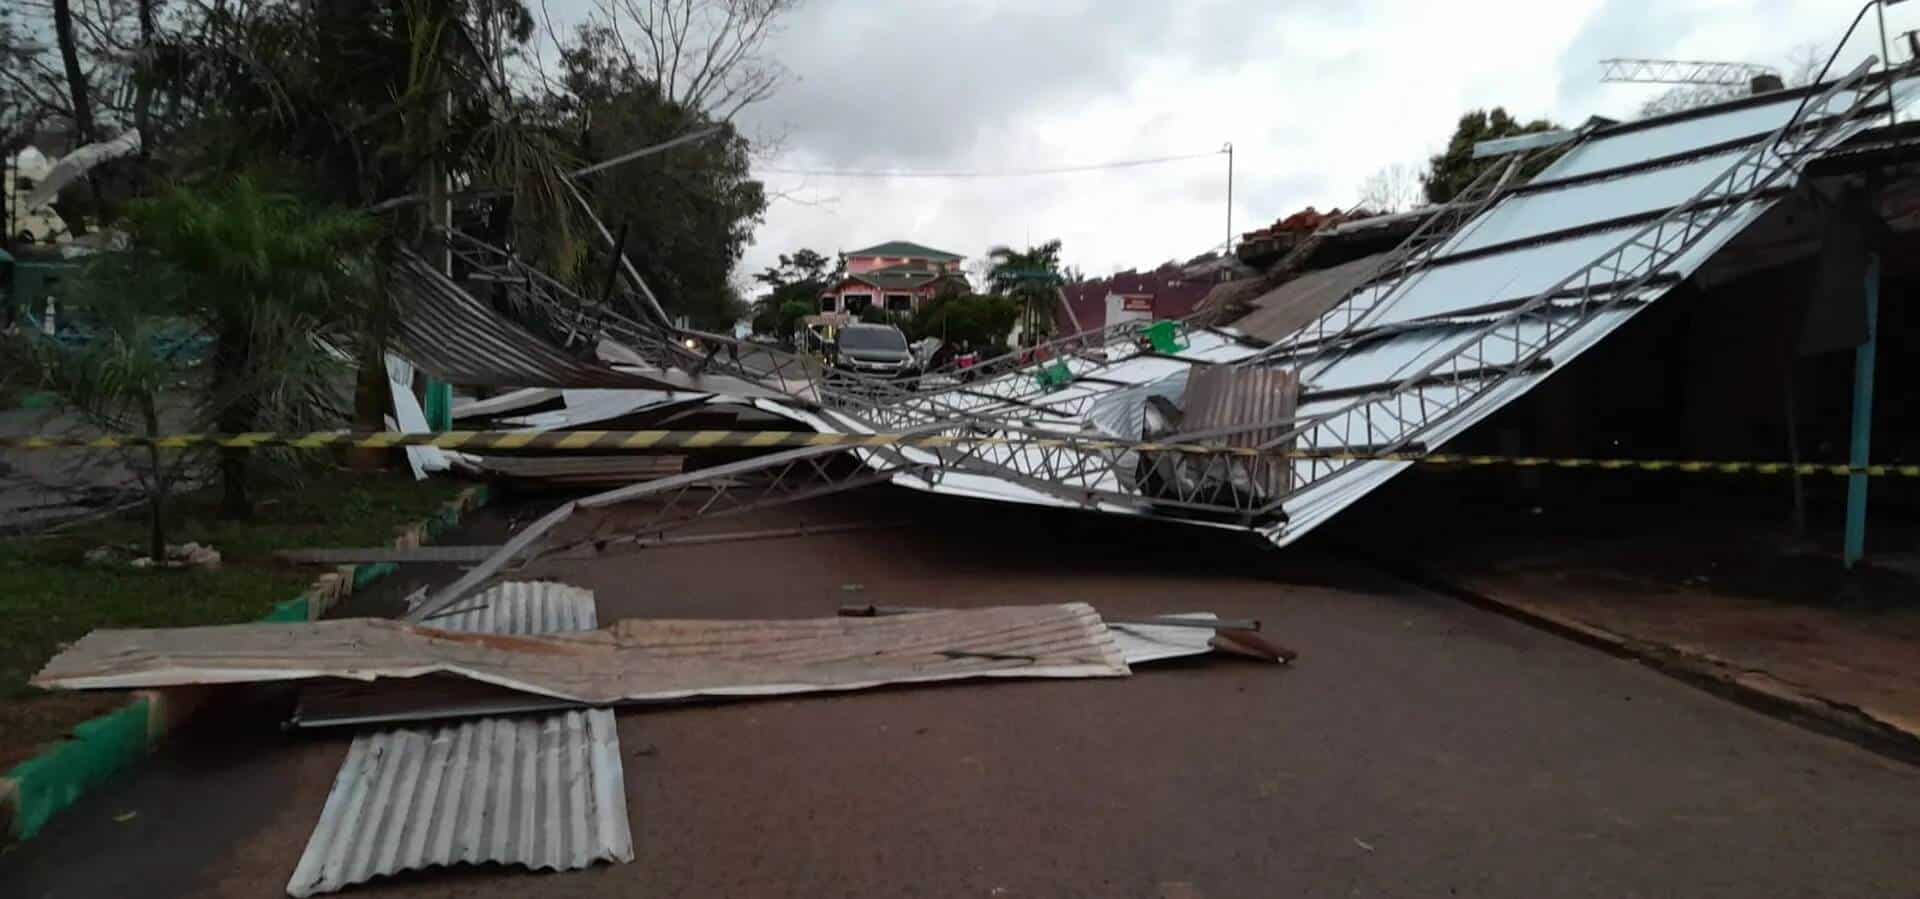 Un muerto y 13 heridos al desplomarse un polideportivo durante un temporal en Paraguay